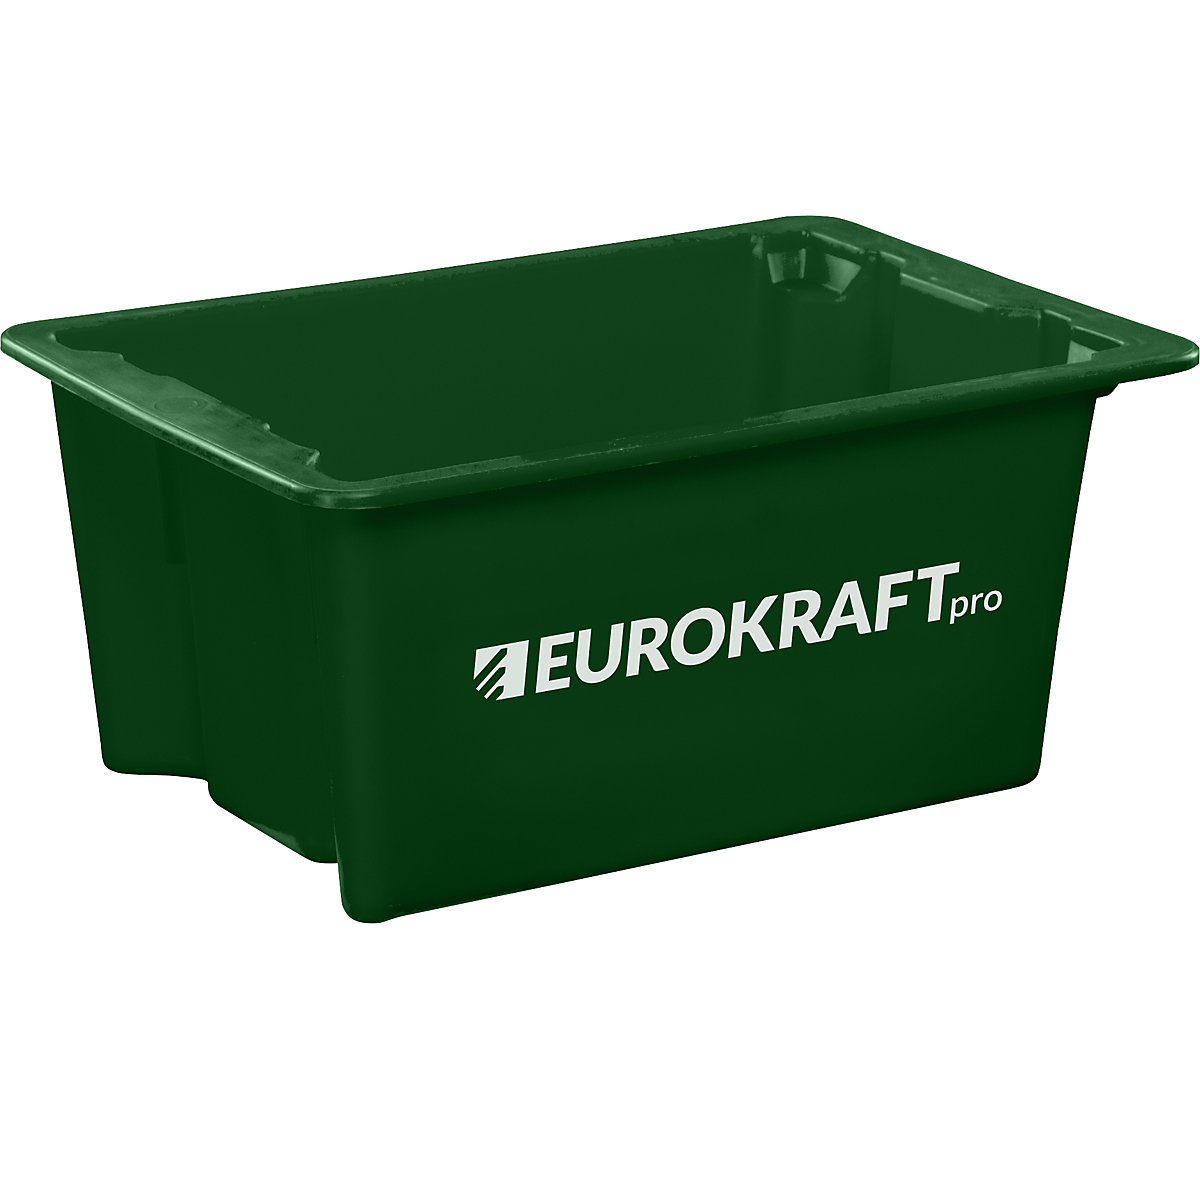 EUROKRAFTpro Drehstapelbehälter aus lebensmittelechtem Polypropylen, Inhalt 6 Liter, VE 4 Stk, Wände und Boden geschlossen, grün